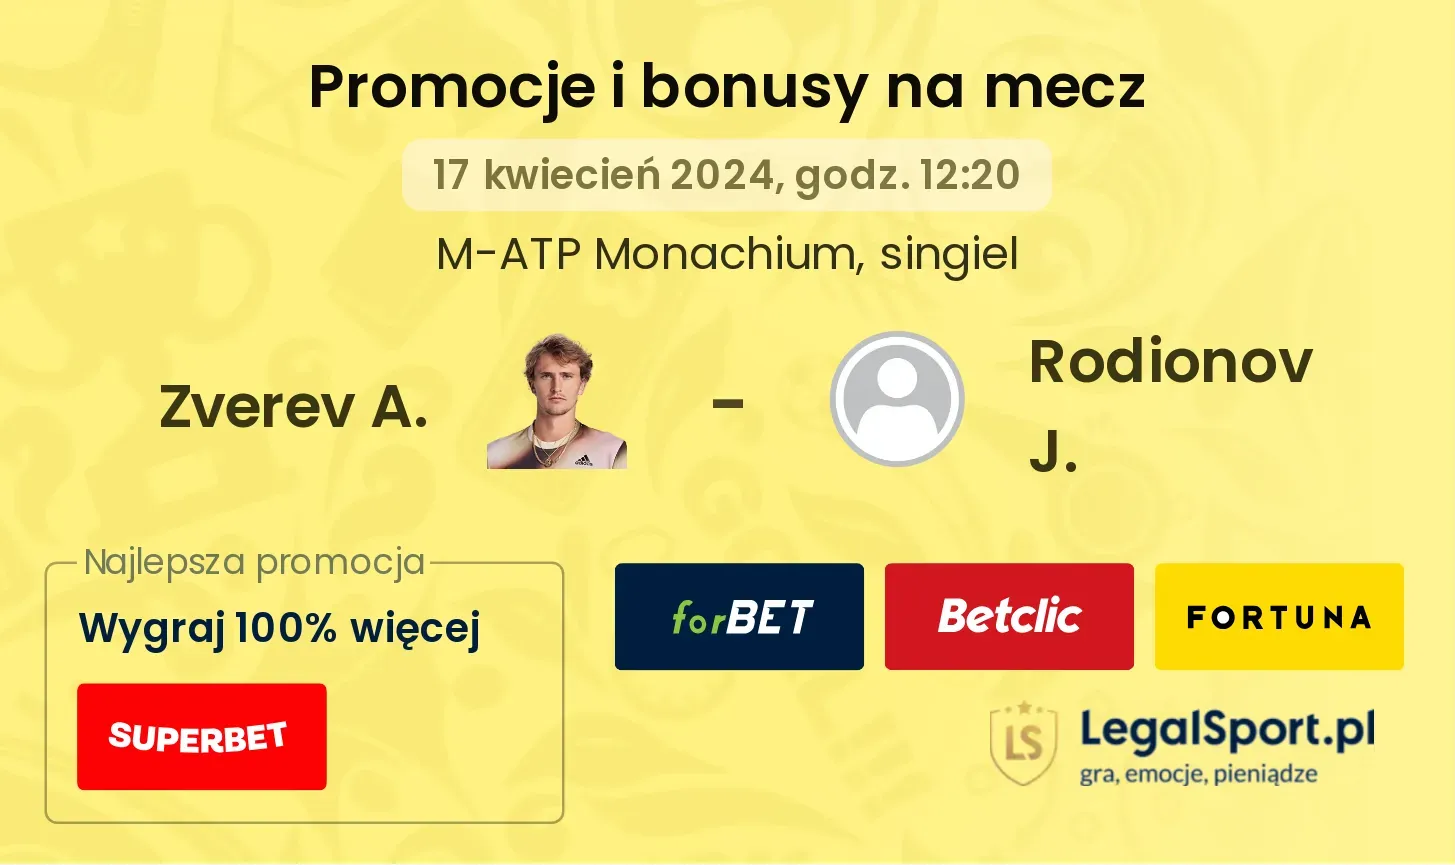 Zverev A. - Rodionov J. promocje bonusy na mecz